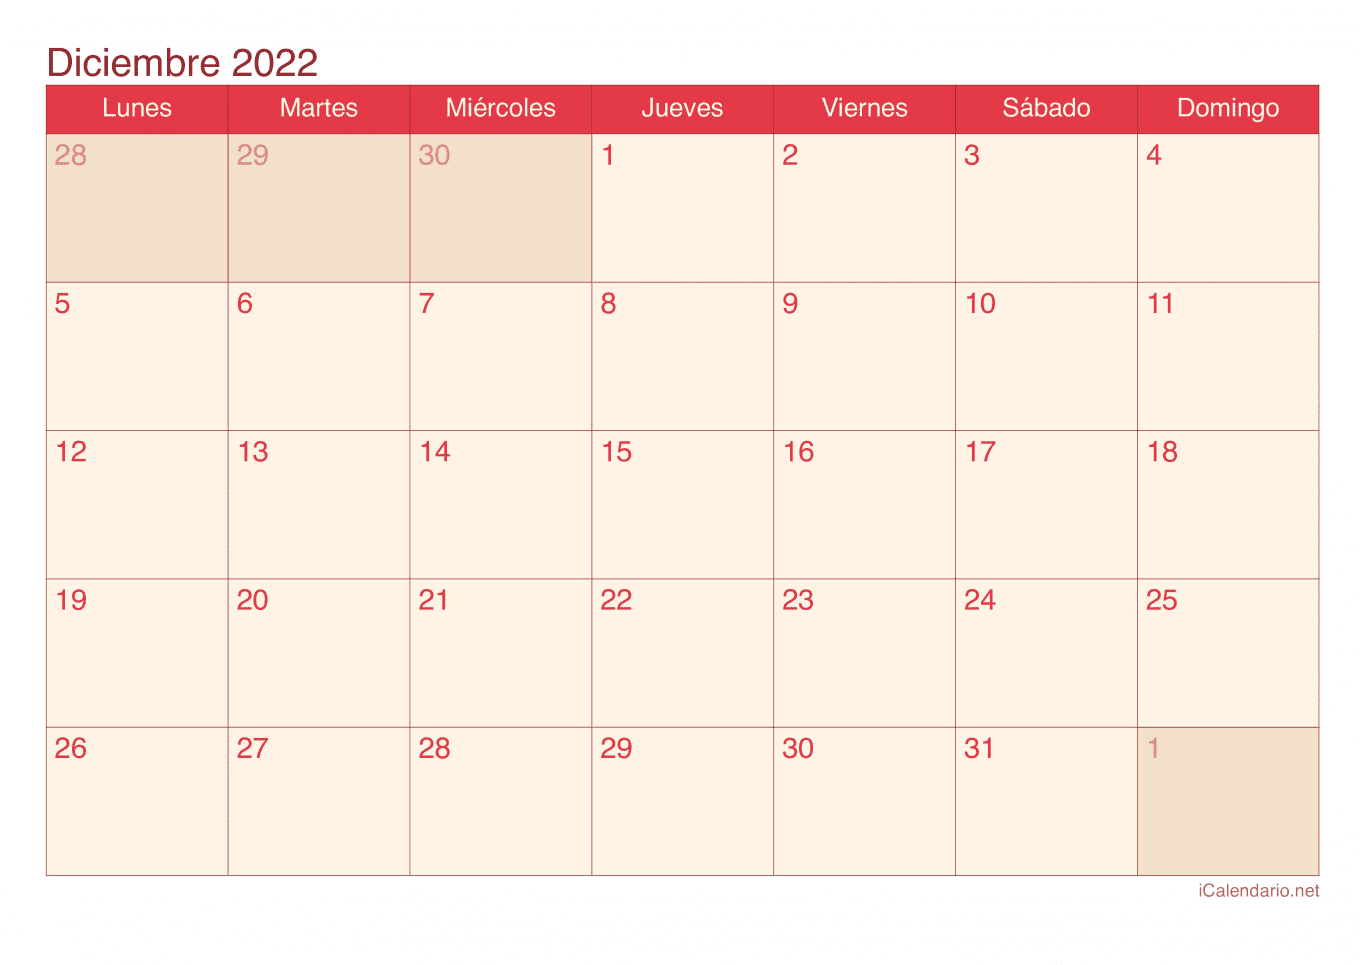 Calendario de diciembre 2022 - Cherry